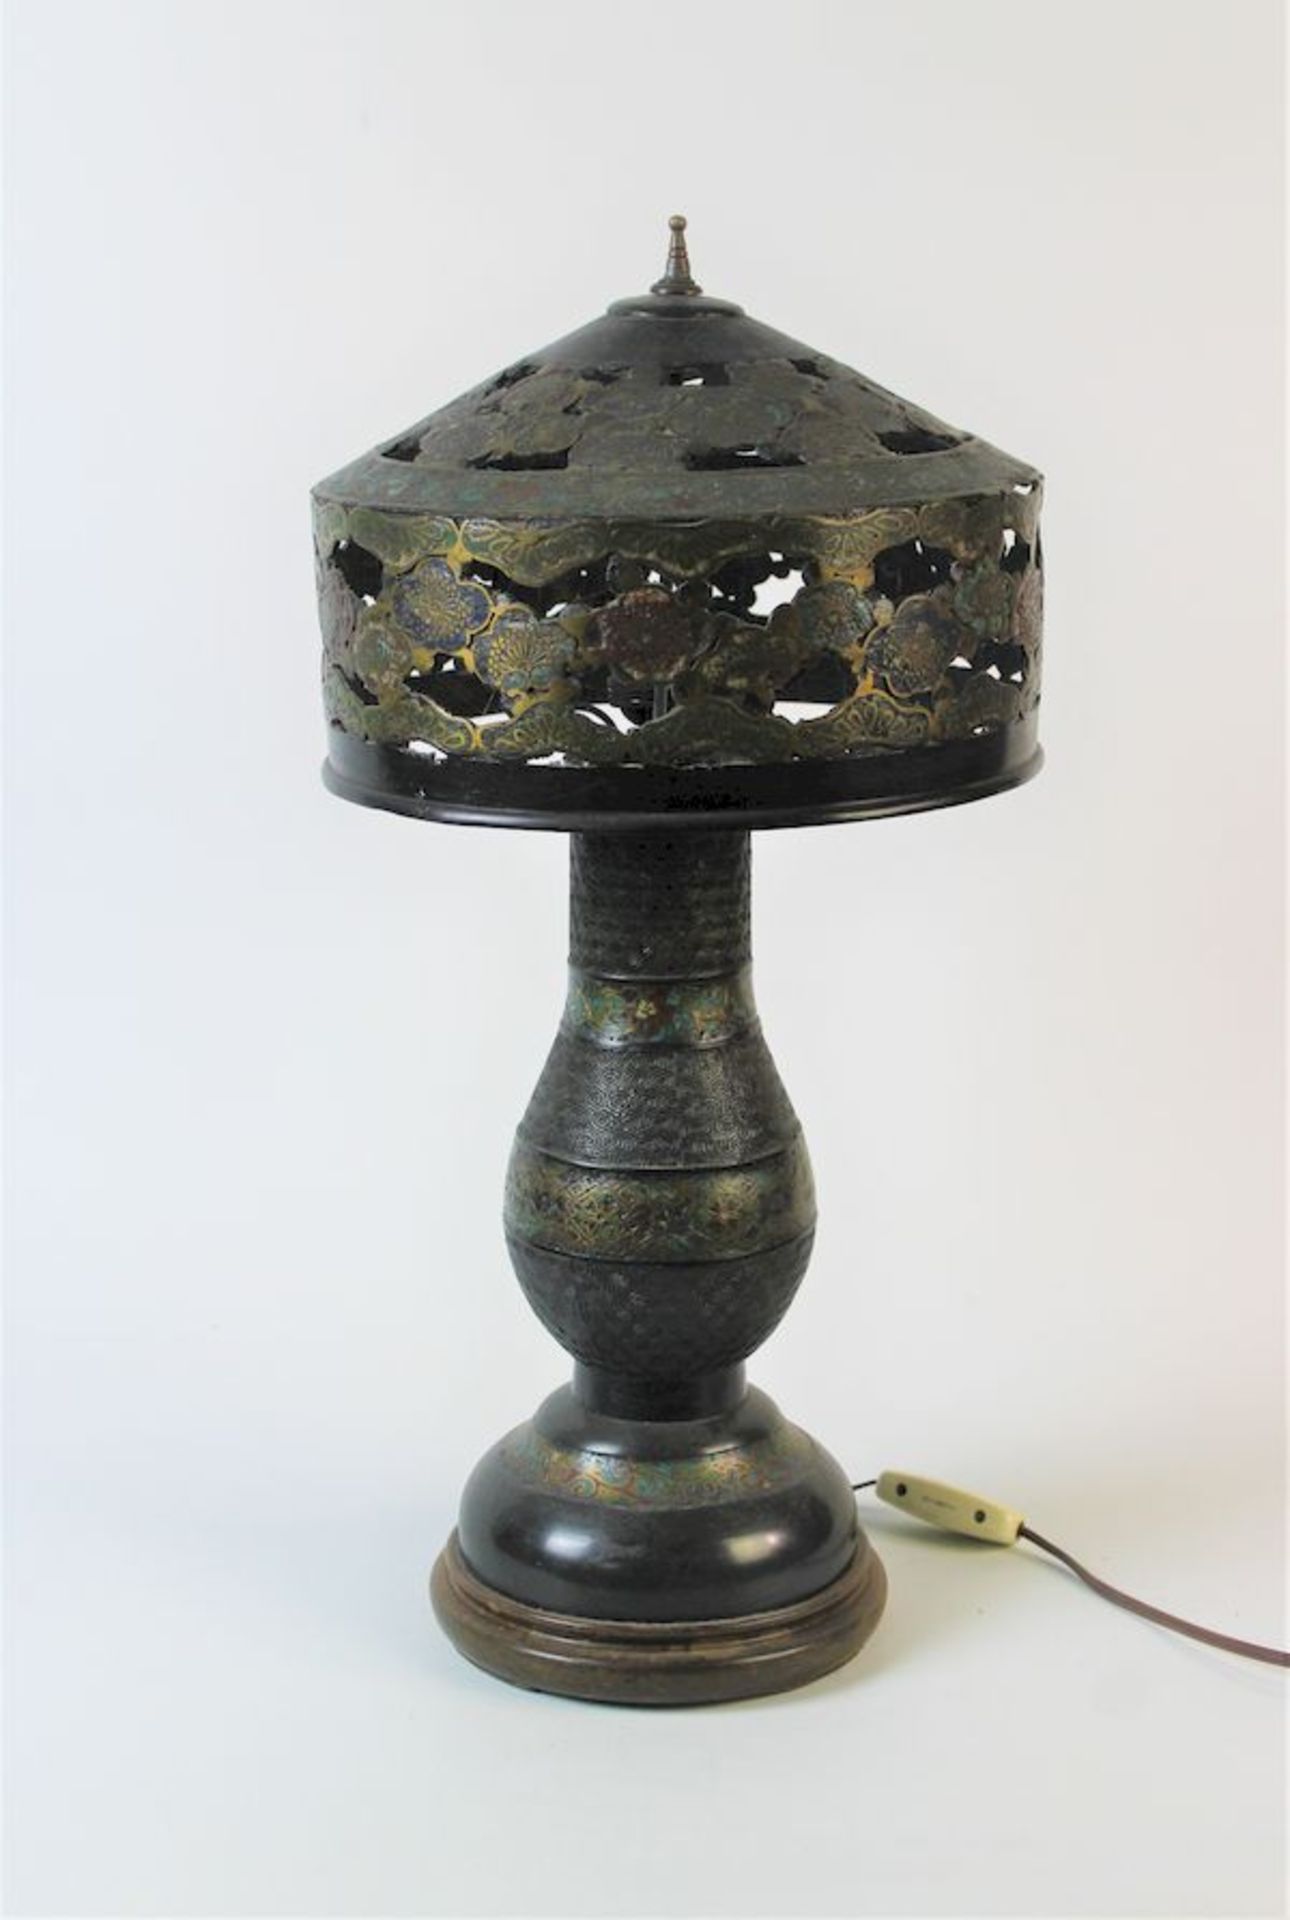 Cloisonne Lampe China, späte Qing DynastieBronze mit Emaille-Einlage auf Holz Sockel Maße: ca. H. 54